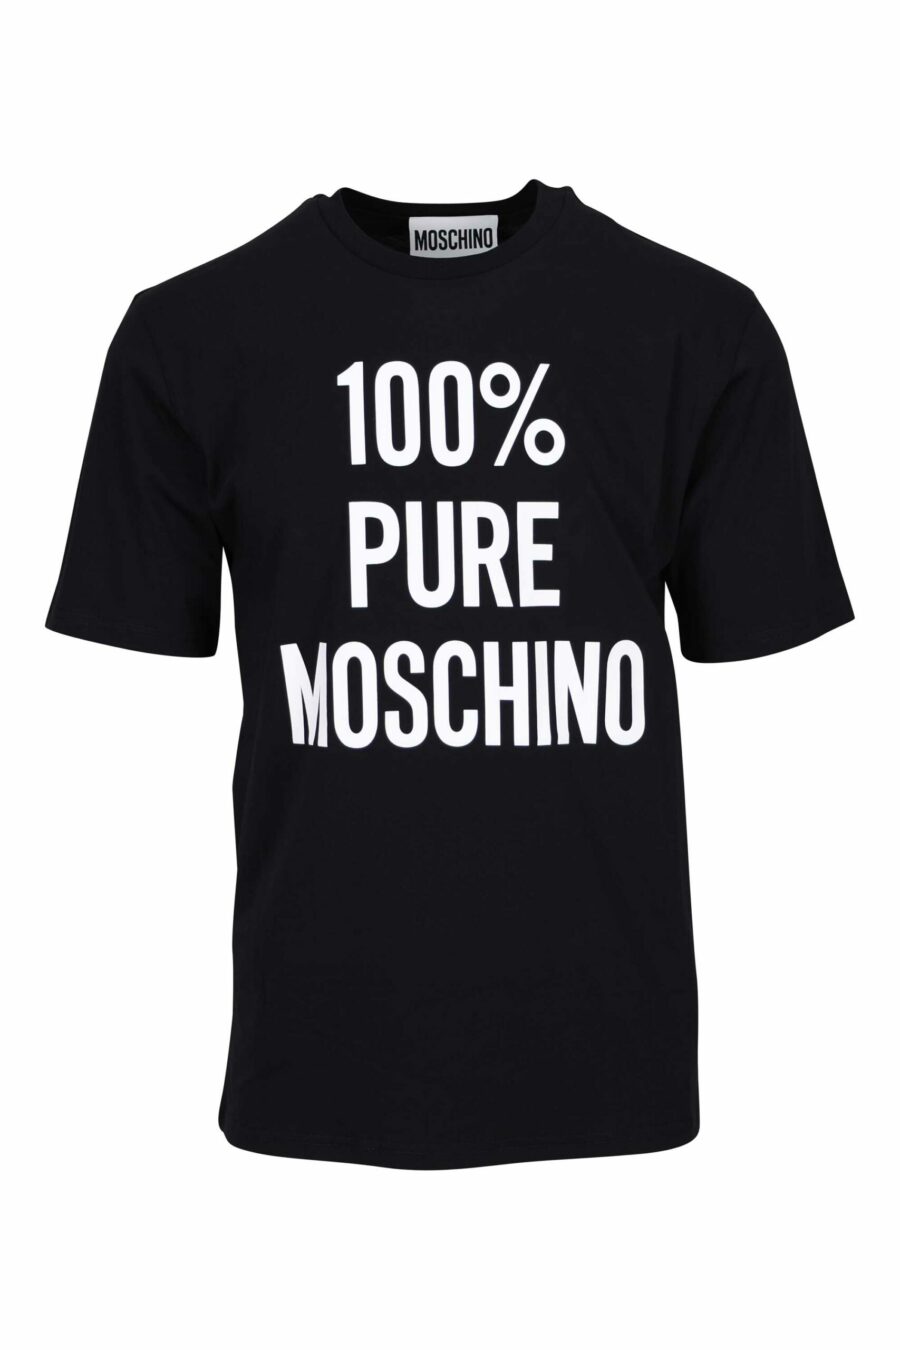 Camiseta negra de algodón orgánico "100% pure moschino" - 667113765150 scaled